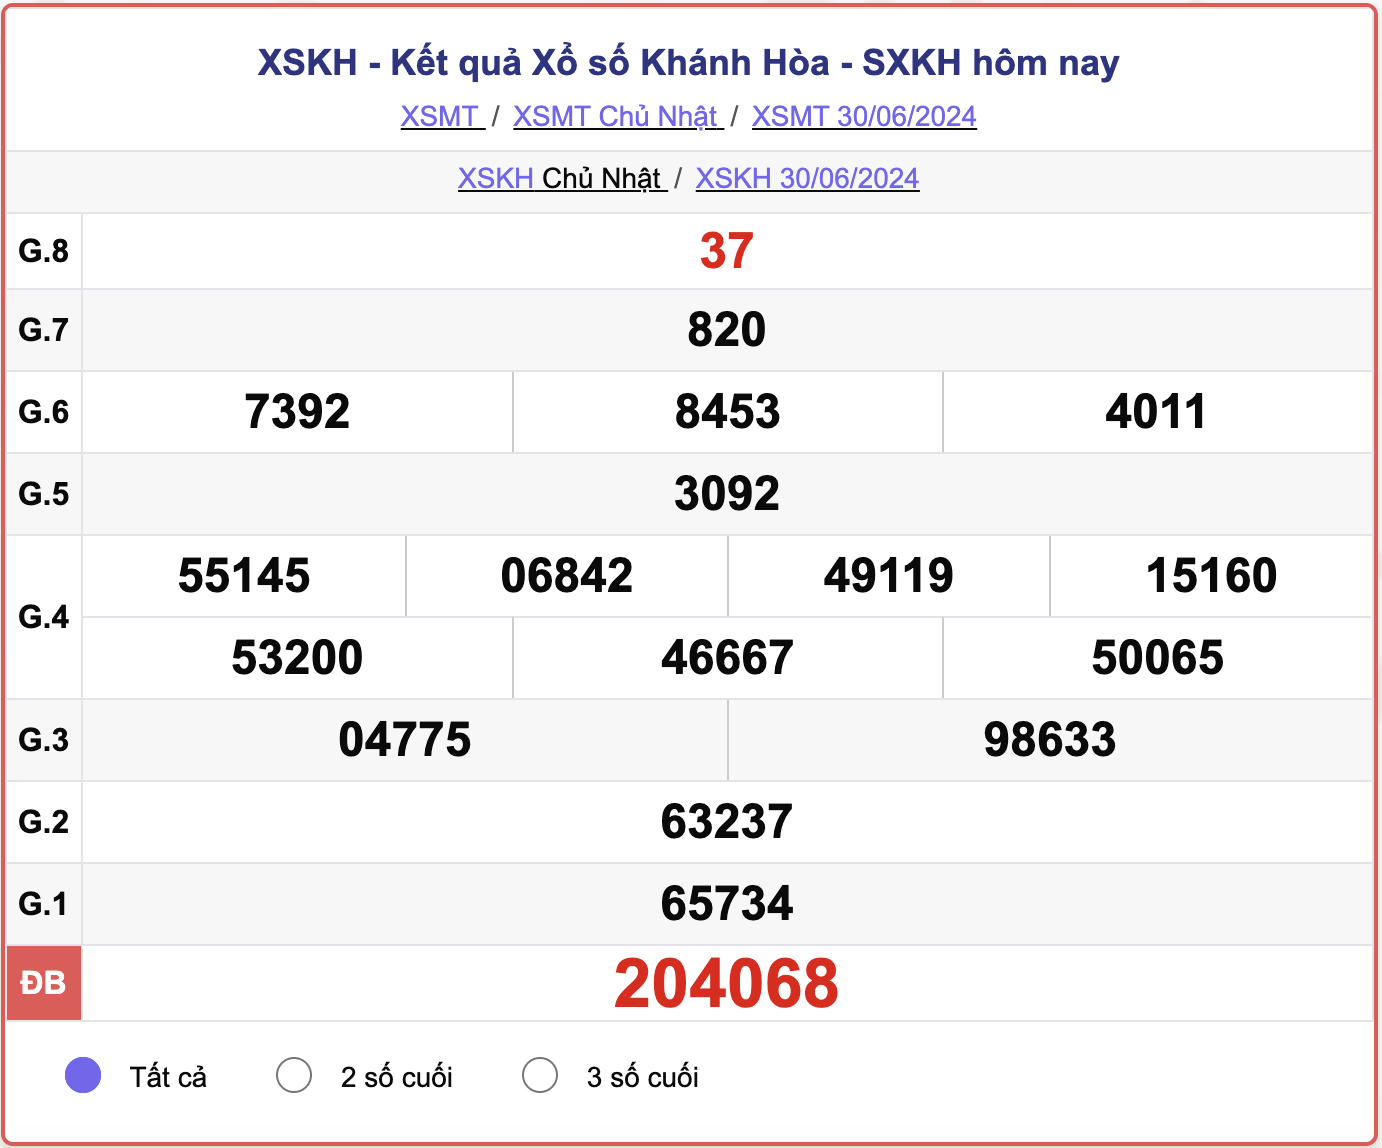 XSKH 30/6, kết quả xổ số Khánh Hòa hôm nay 30/6/2024.